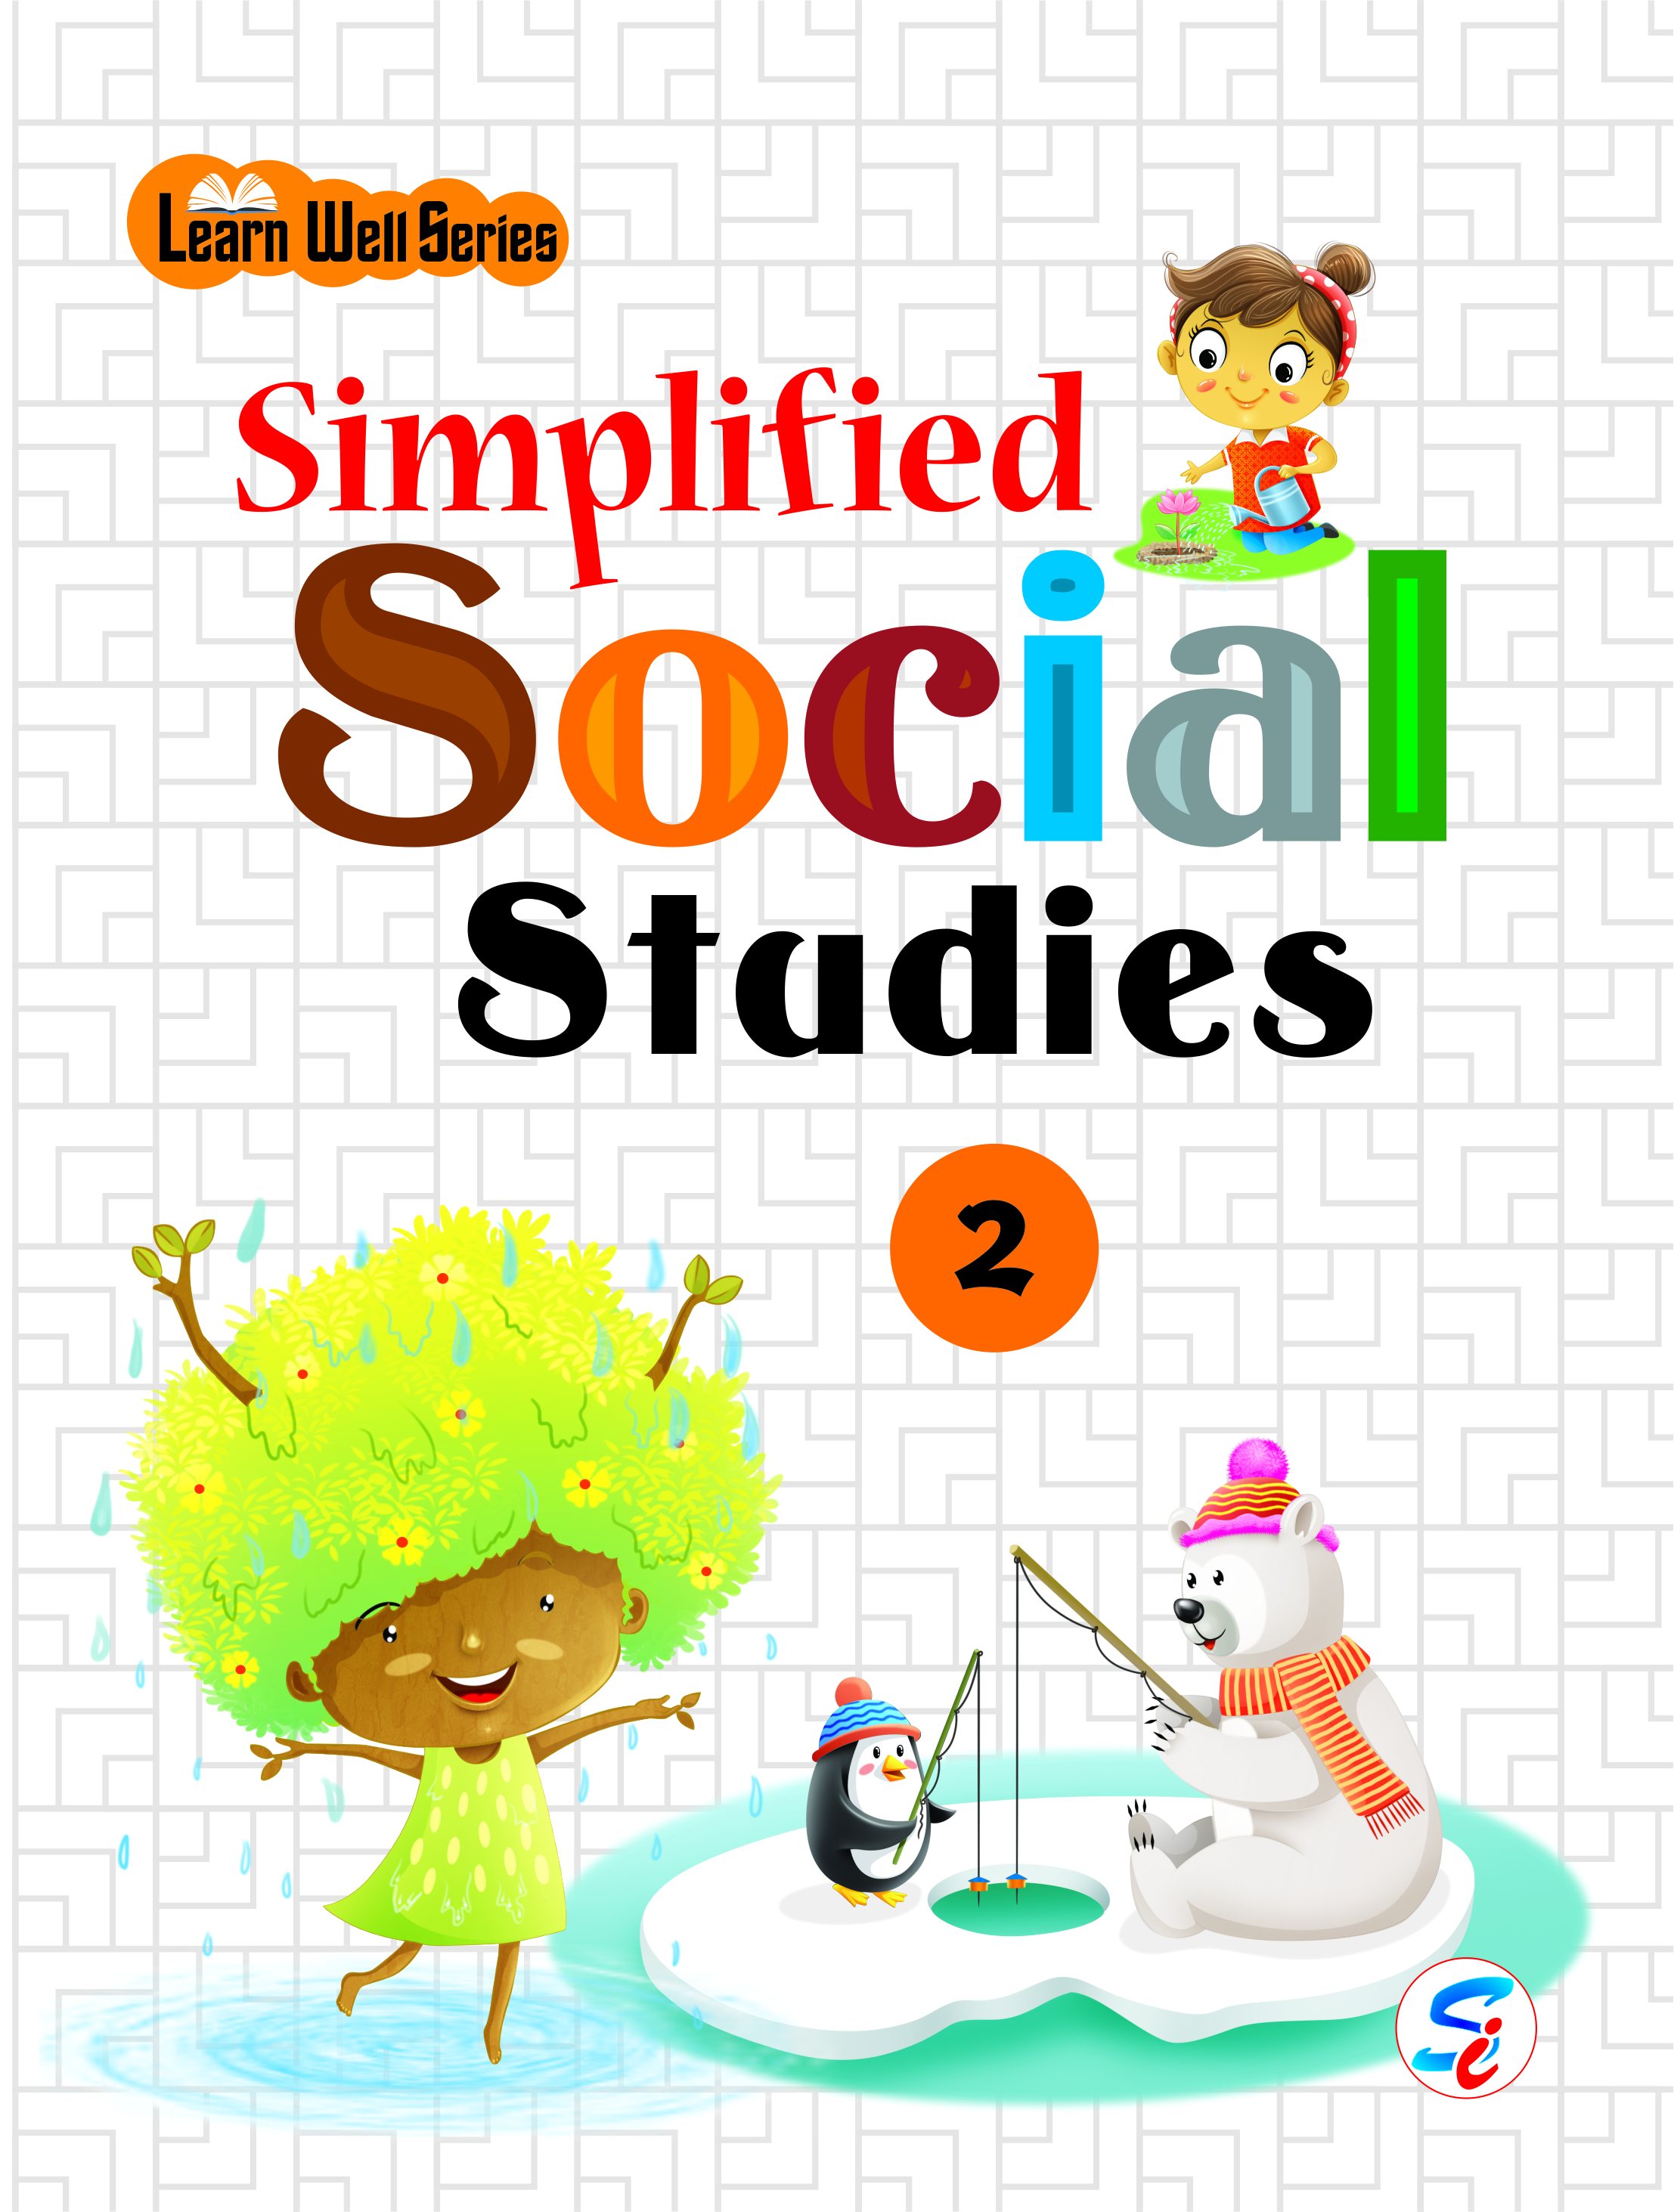 SIMPLIFIED SOCIAL STUDIES 2